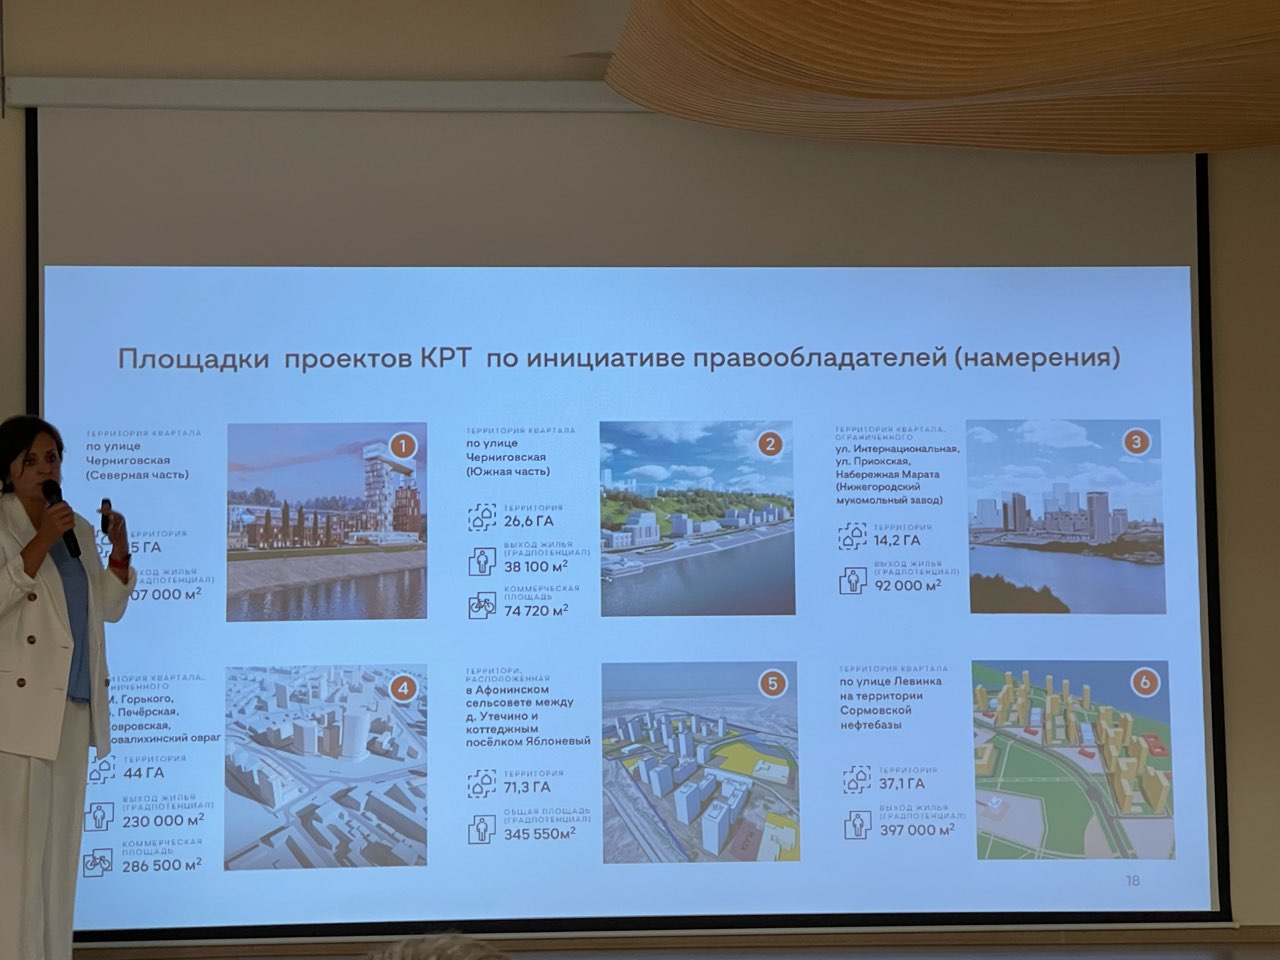 Нижегородская область успешно реализовала базу по комплексному развитию территорий - фото 2